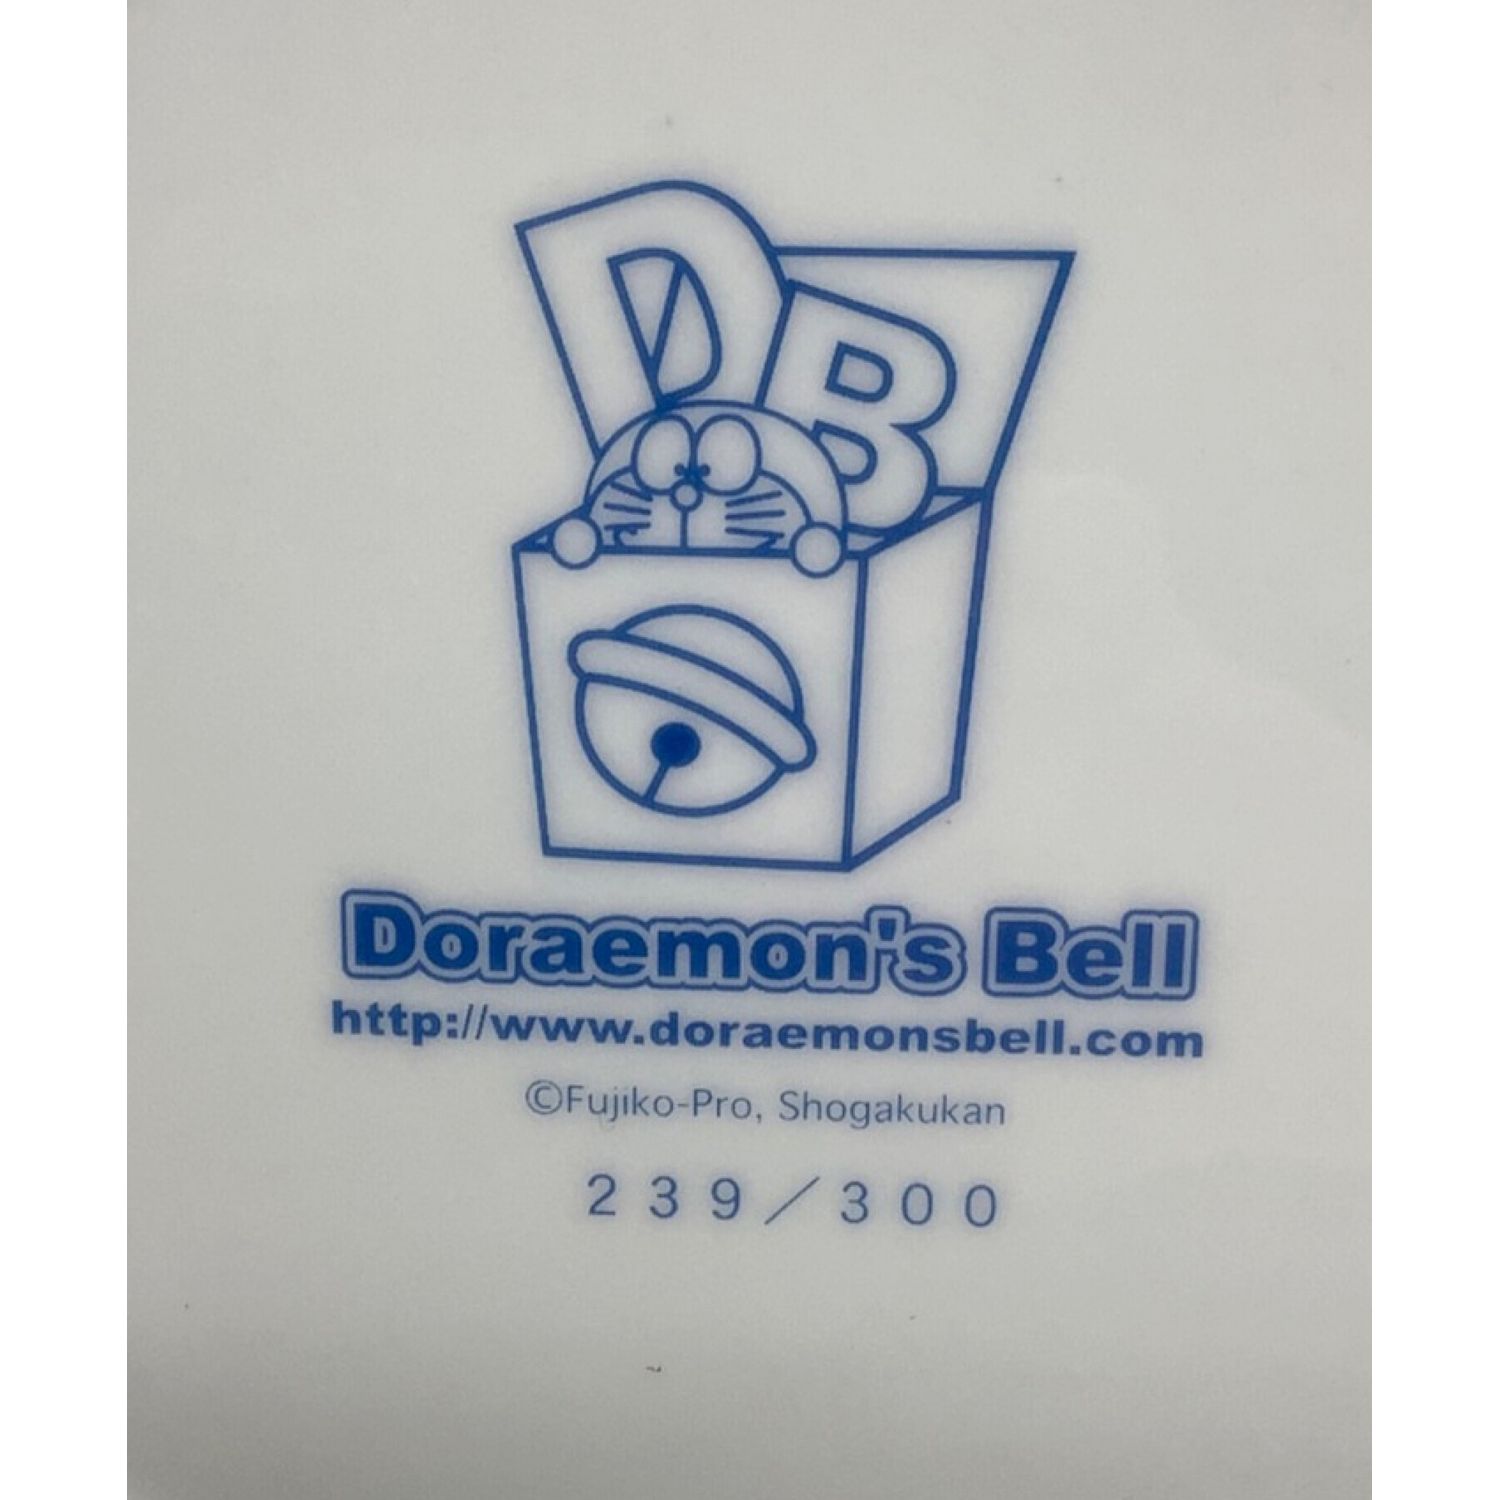 ドラえもんズベル Doraemon's Bell 2004年限定 イヤープレート 